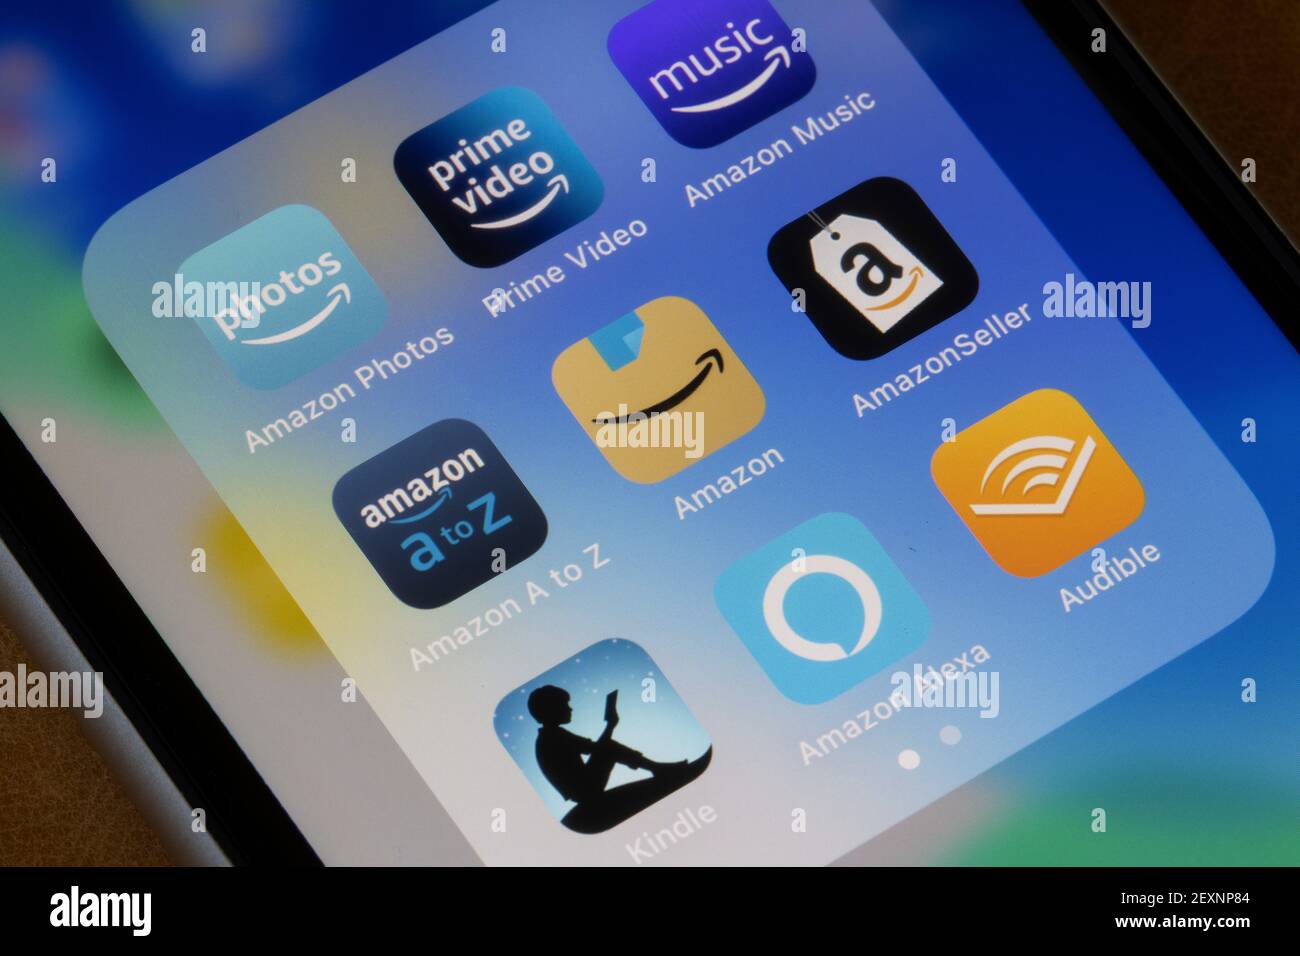 Verschiedene Apps von Amazon sind auf einem iPhone zu sehen - Amazon Fotos, Musik, Prime Video, A bis Z, Amazon Shopping, Amazon Verkäufer, Kindle, Alexa und Audible. Stockfoto